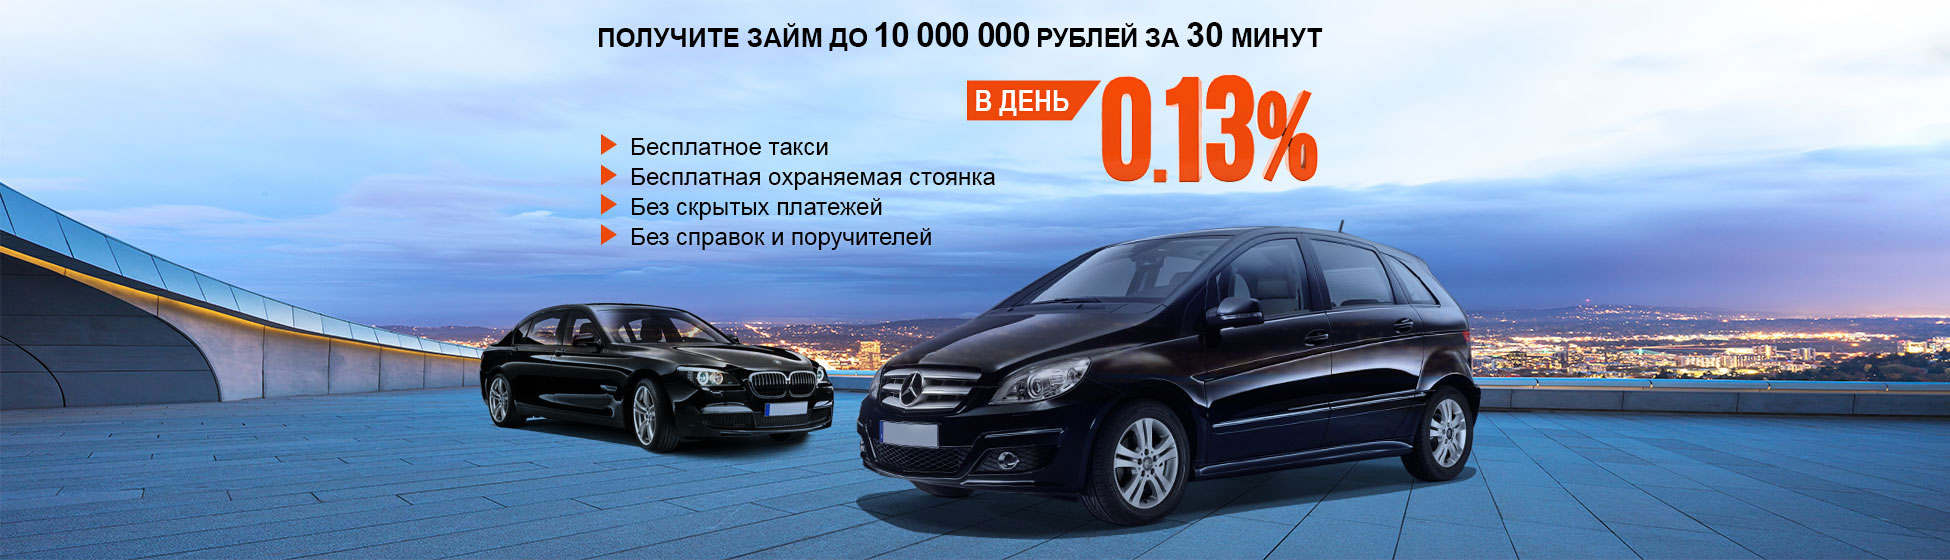 Получите займ до 10 000 000 рублей за 30 минут!